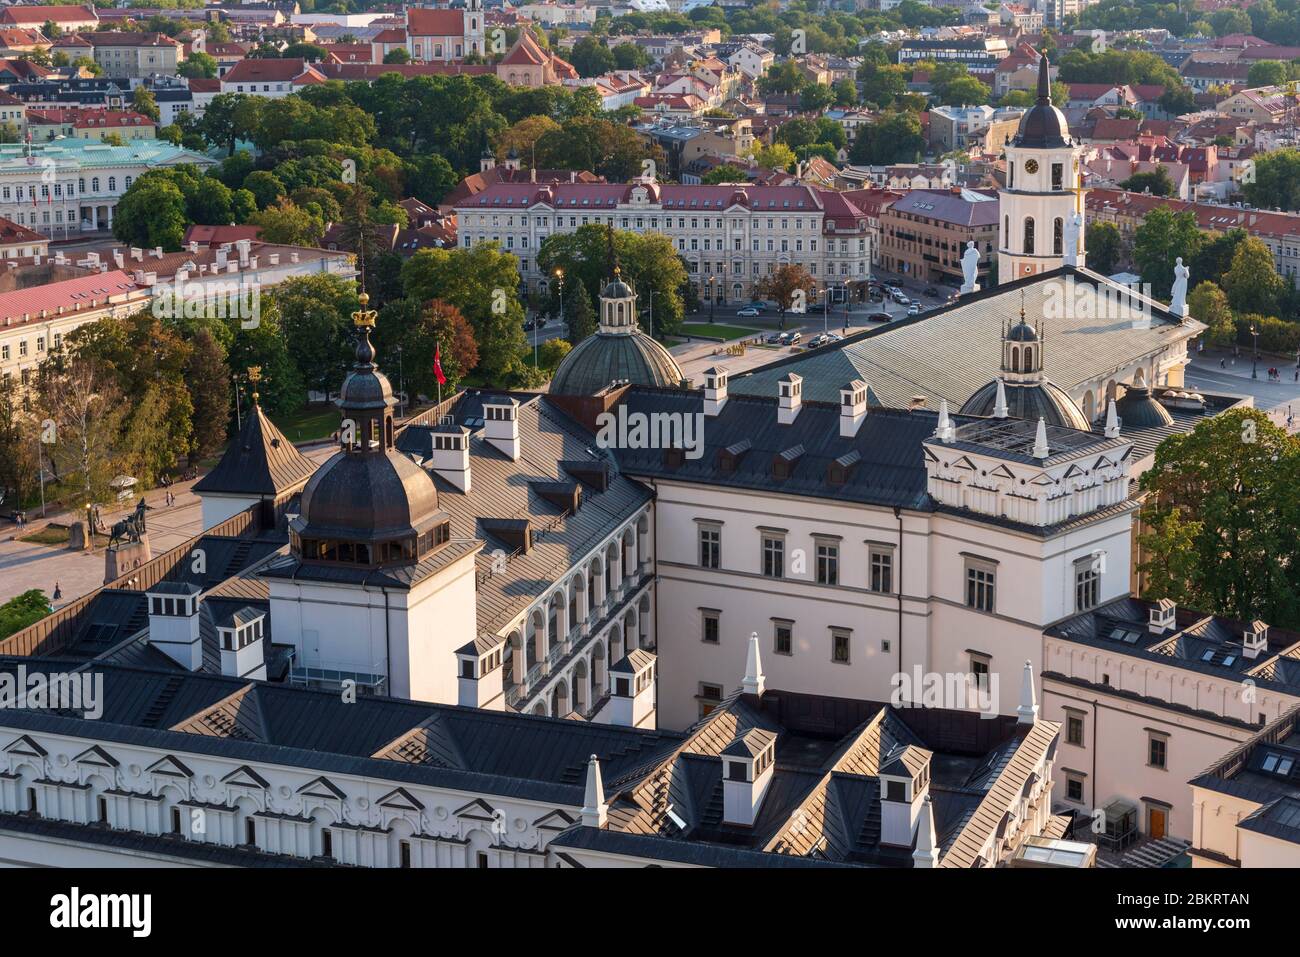 Lituania (Stati baltici), Vilnius, centro storico, patrimonio mondiale dell'UNESCO, Palazzo dei Granduchi, torre dell'orologio situata di fronte a San Stanislas e la cattedrale di San Vladislav Foto Stock